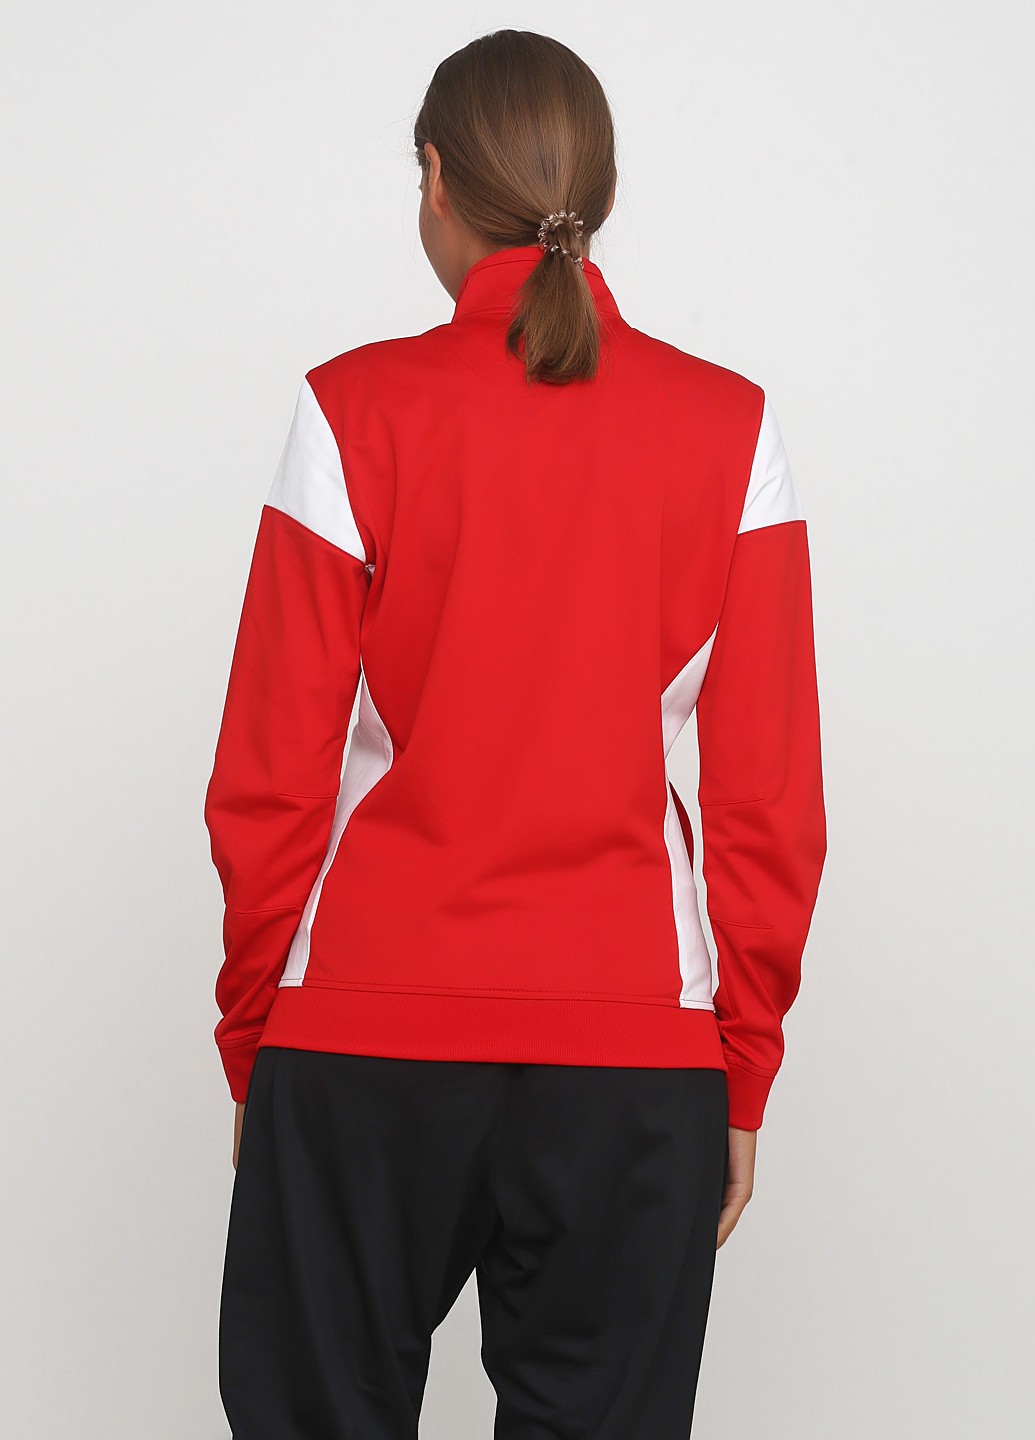 Олимпийка Nike women's sideline knit jacket (187143689)